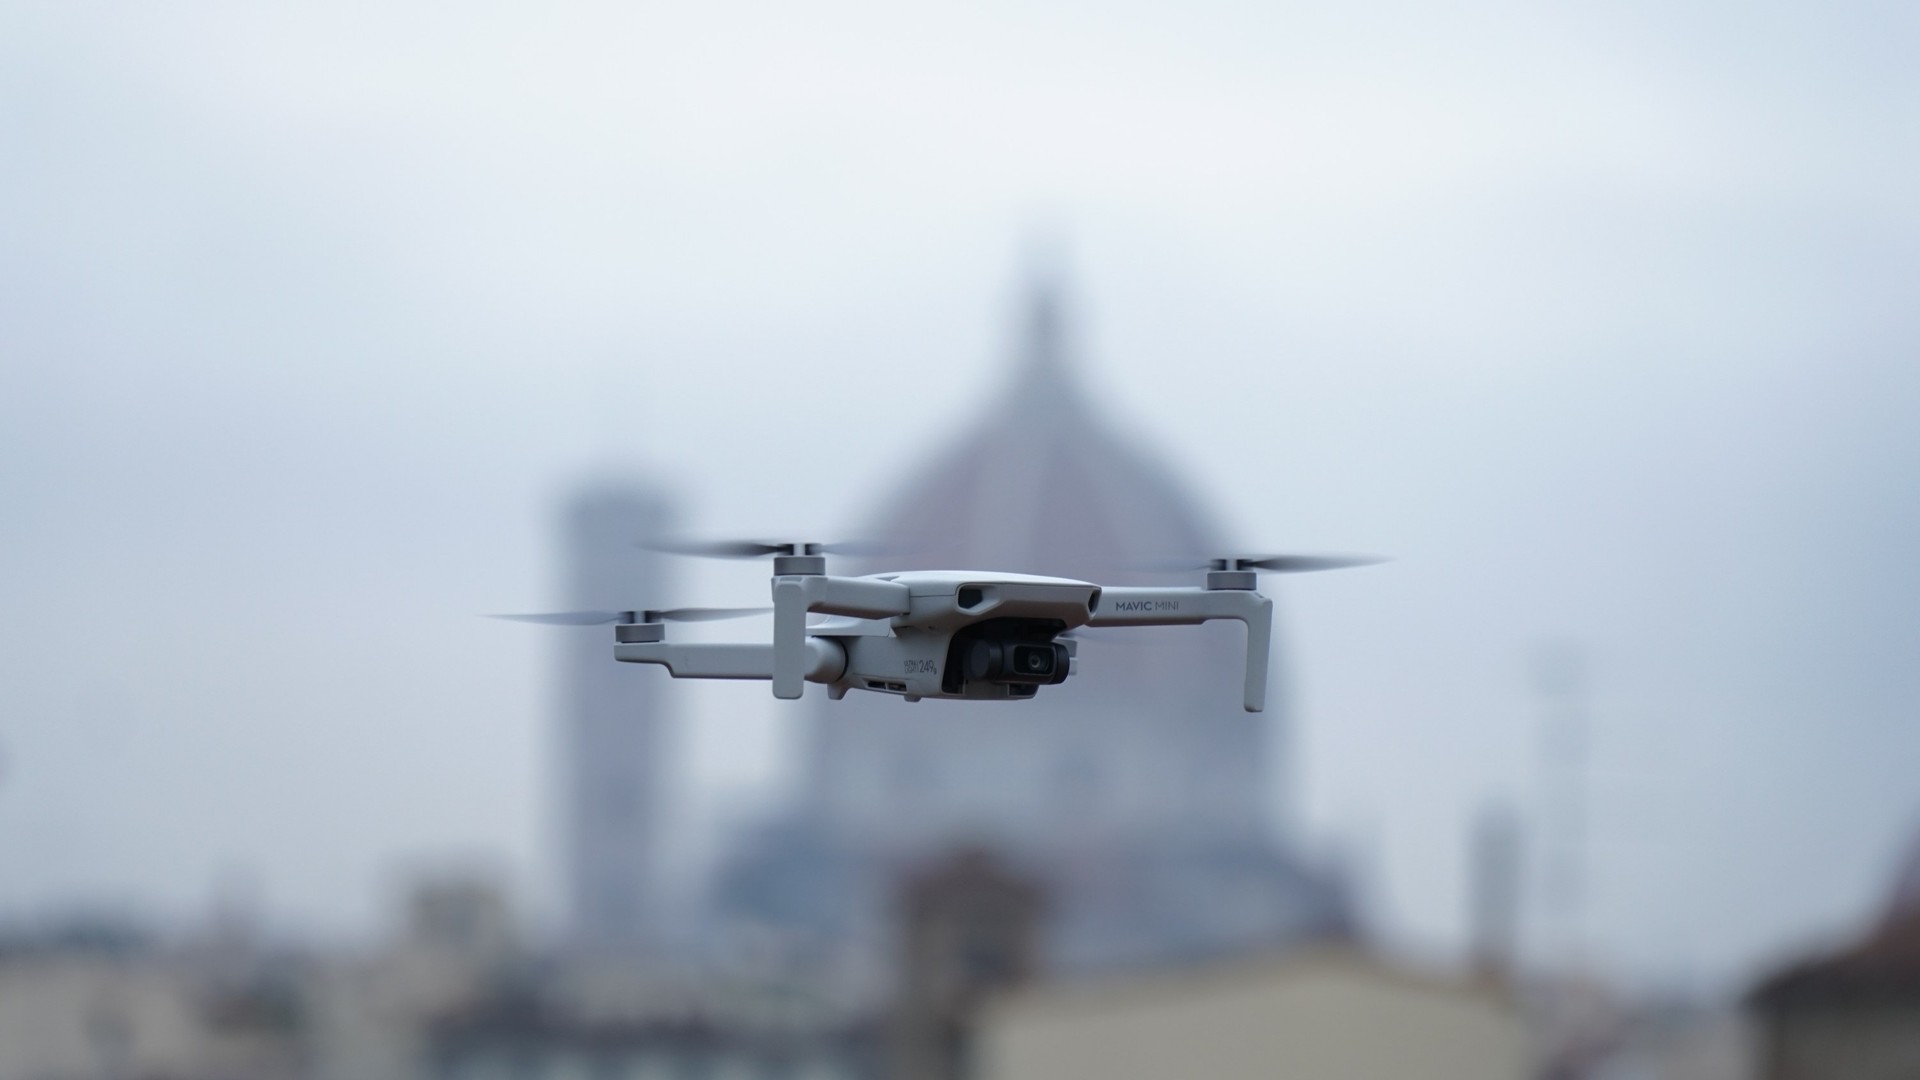 droni controllati a distanza